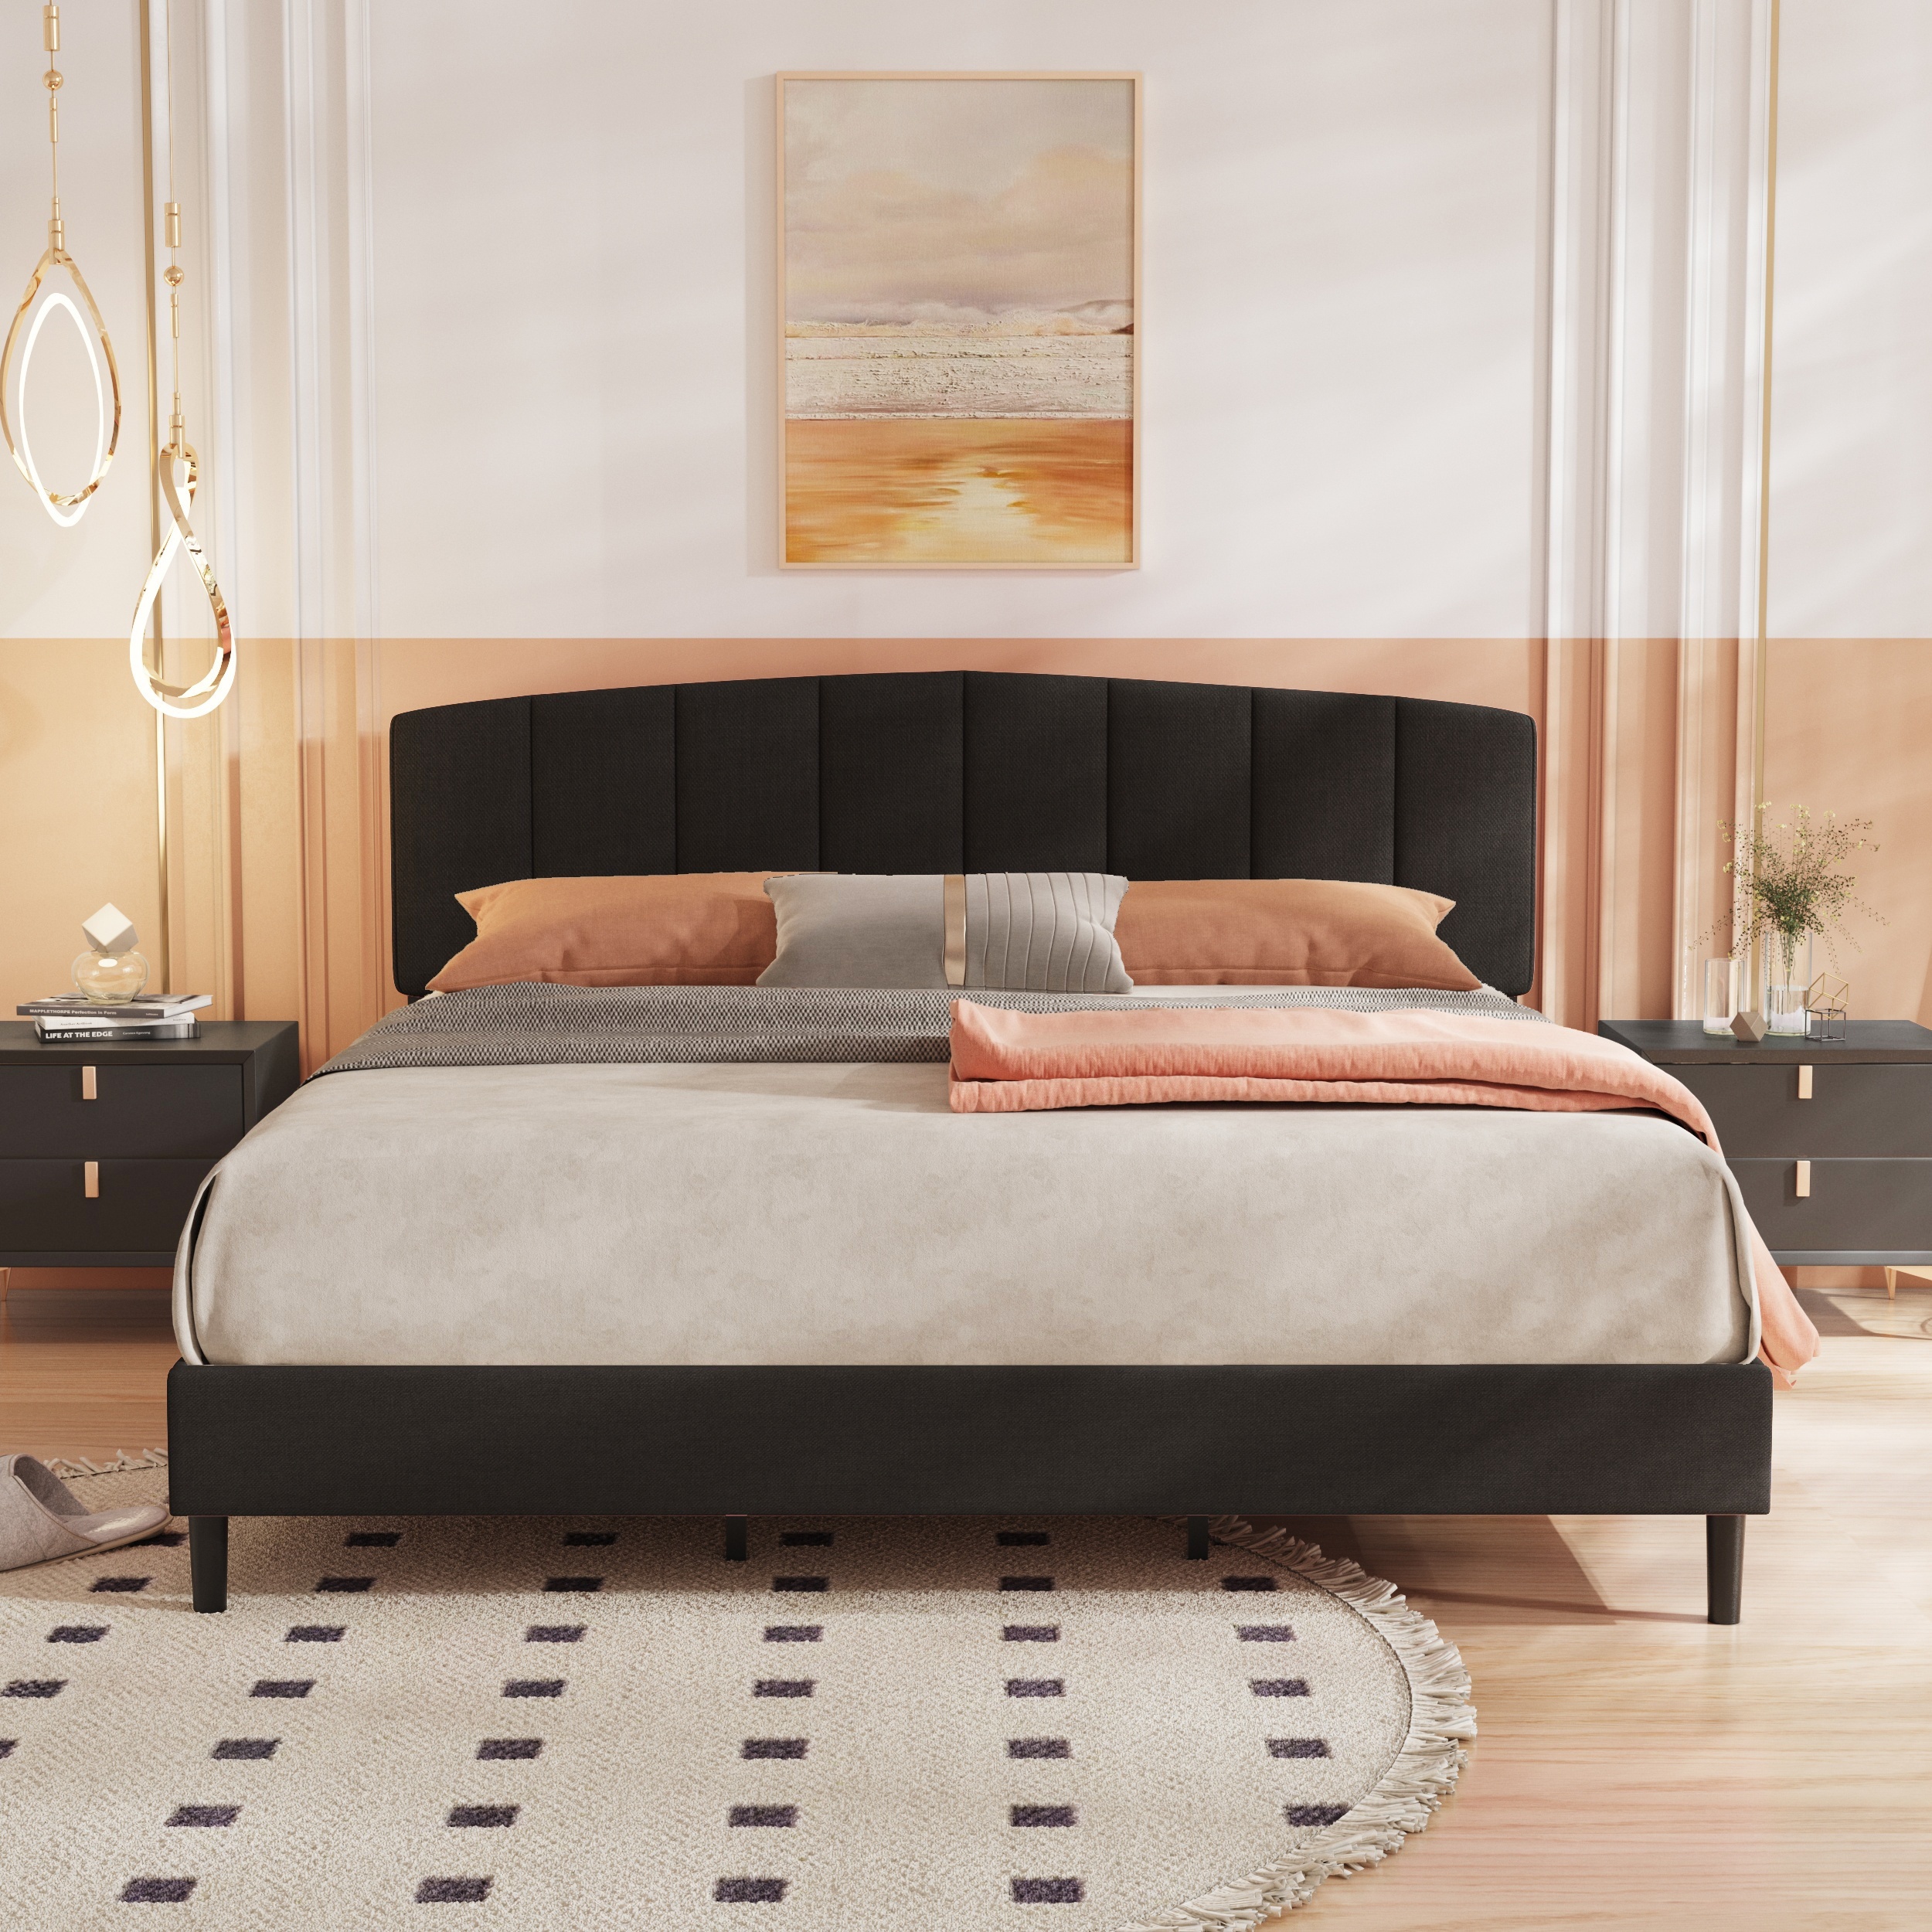 Base de cama plegable resistente para colchón de metal, listón de  plataforma de metal, no necesita somier, fácil montaje, sin ruido, color  negro